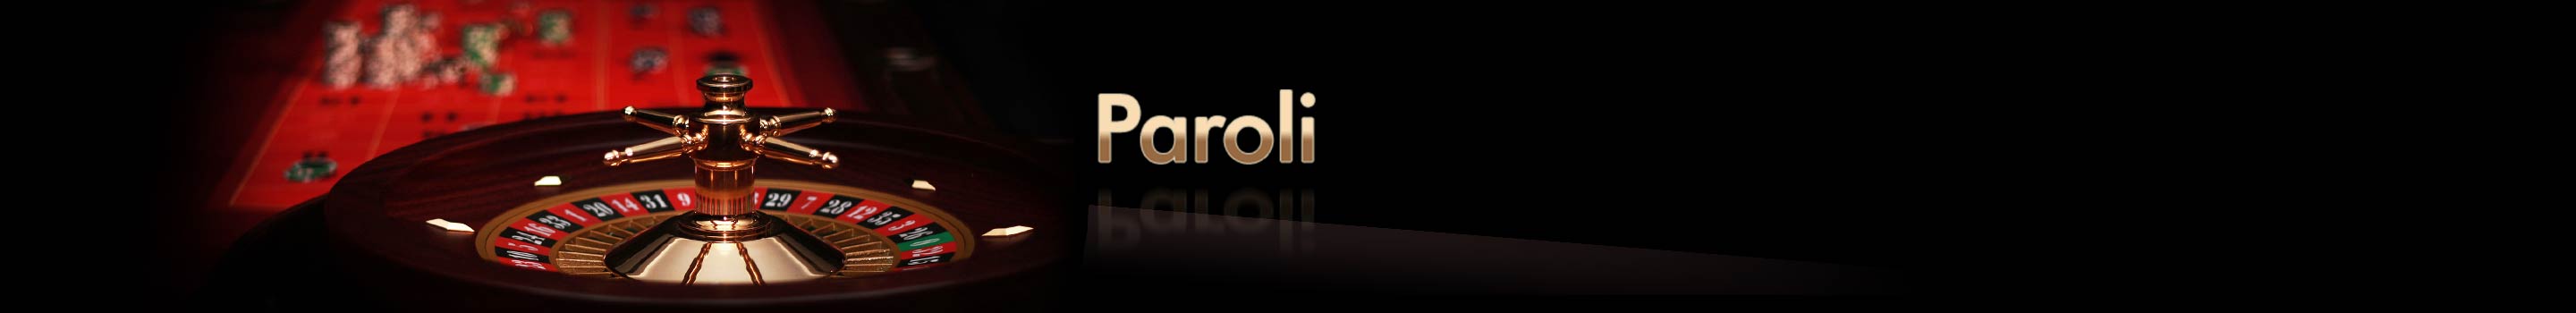 Paroli system